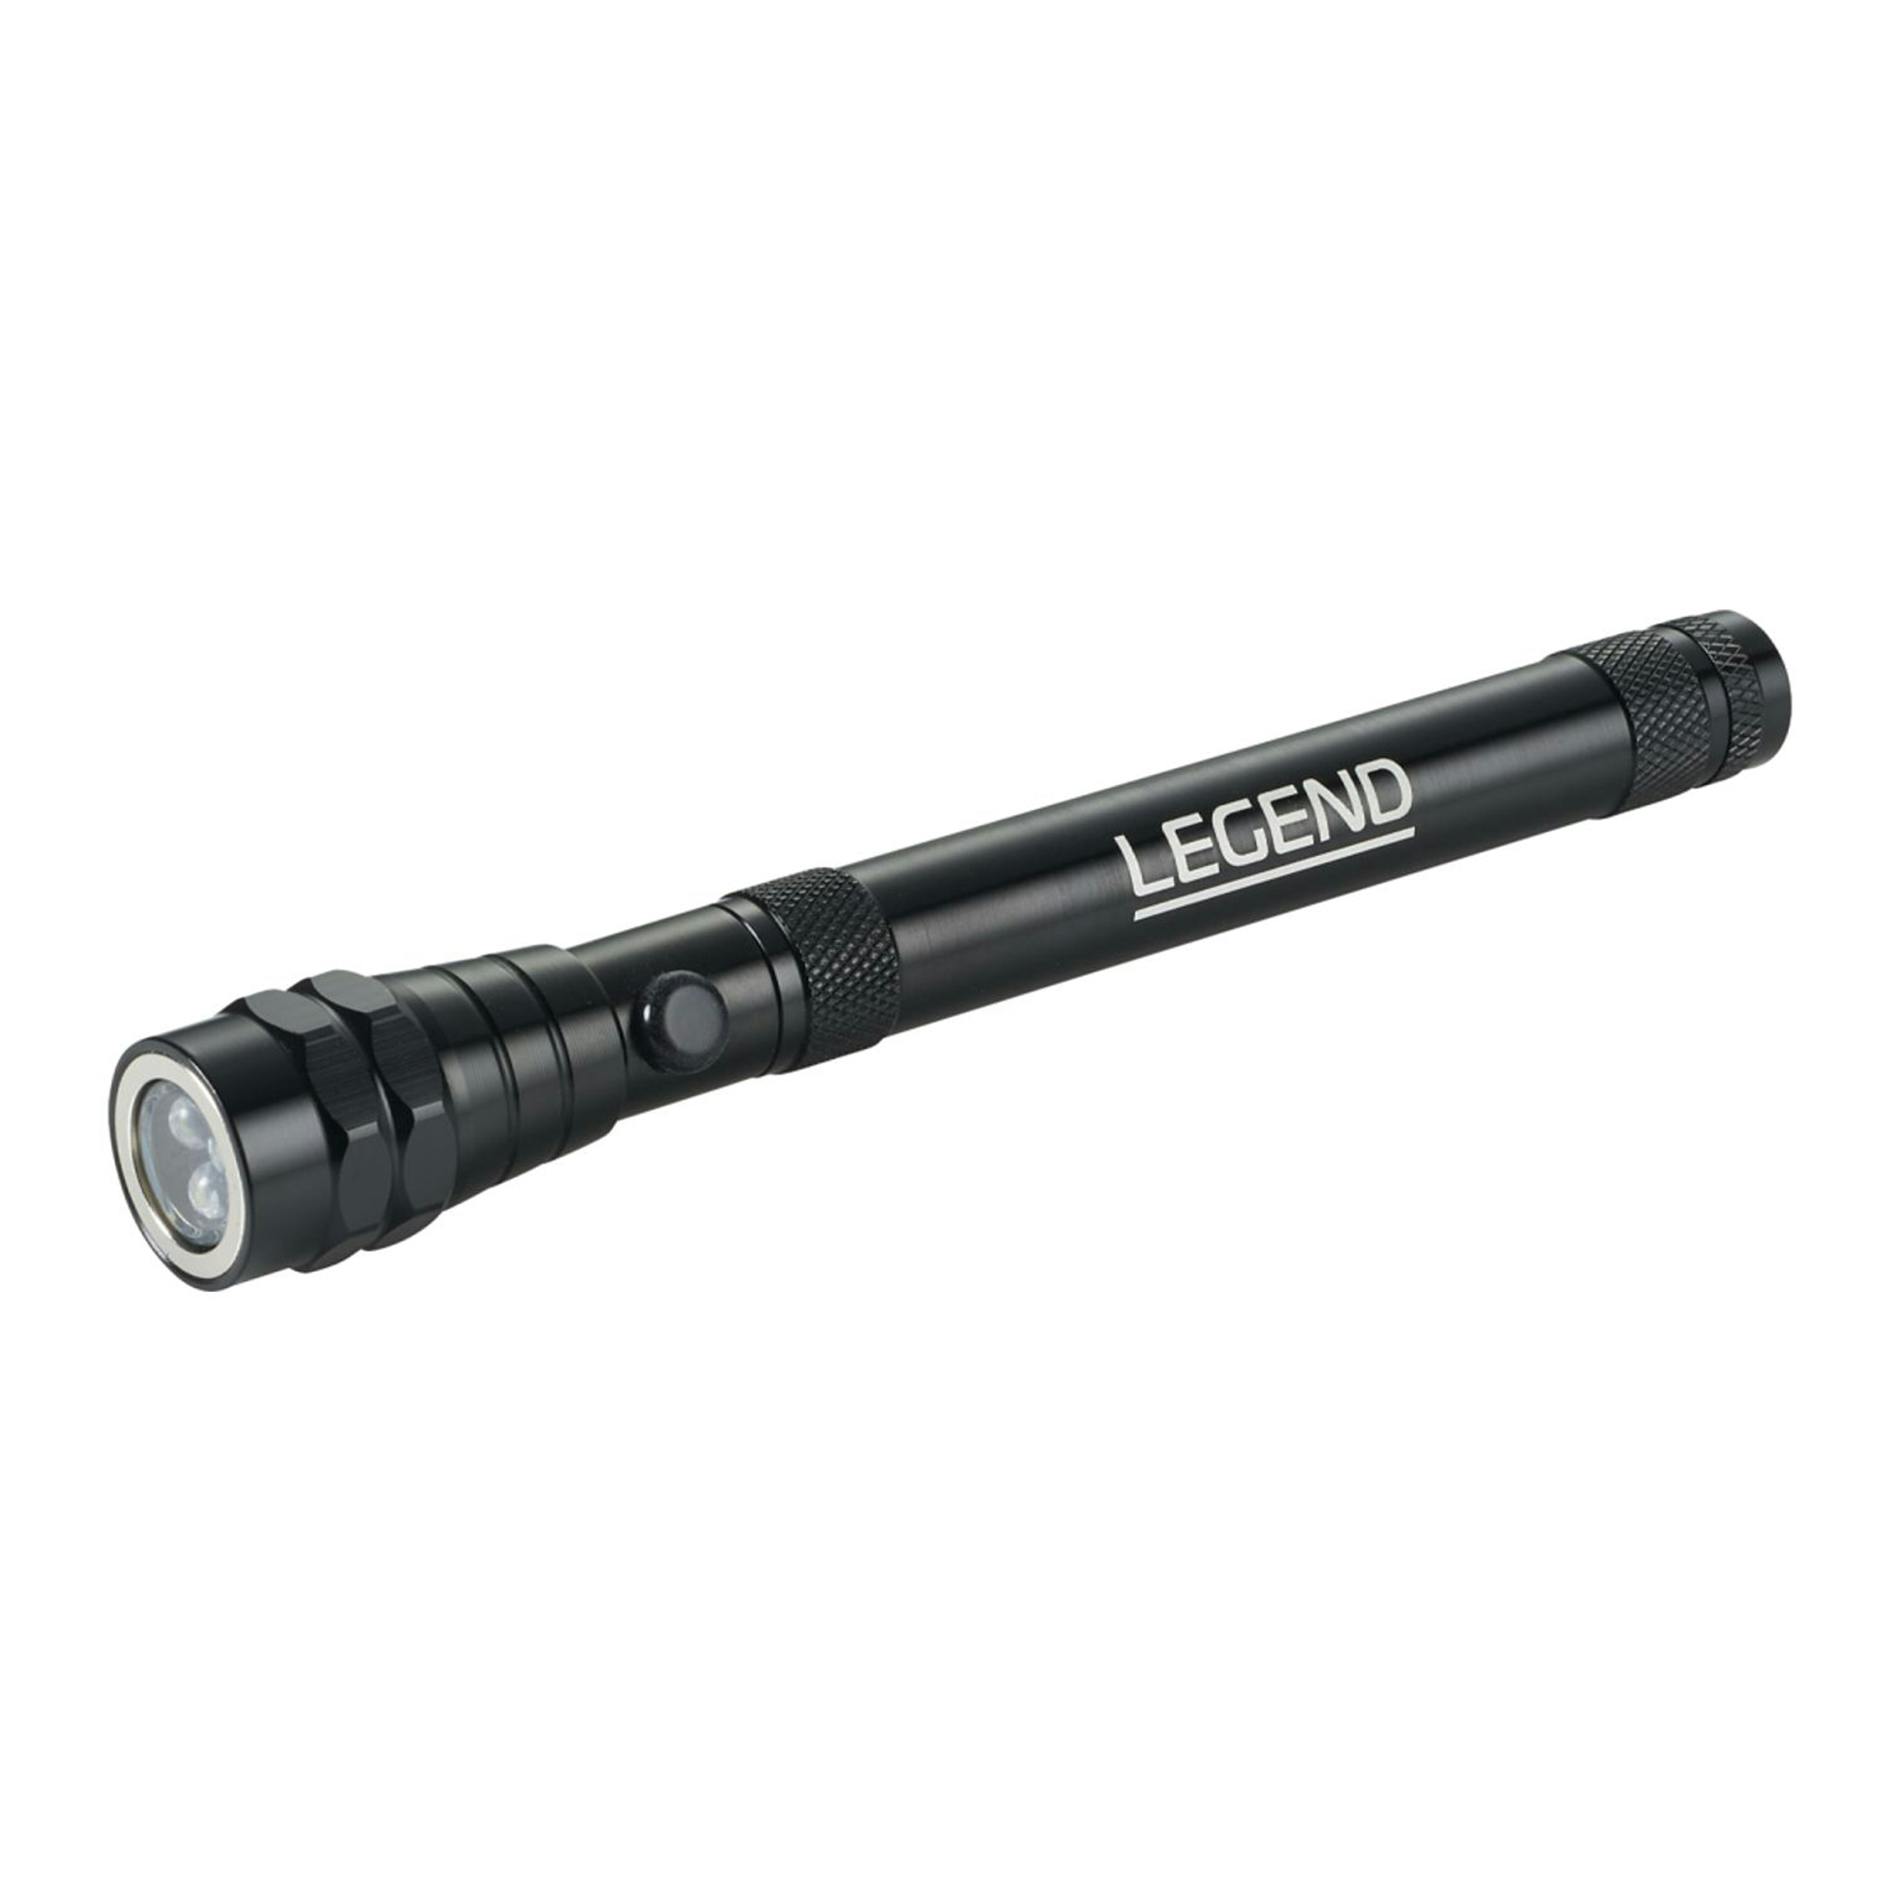 Flare Telescopic LED Magnetic Flashlight - additional Image 1